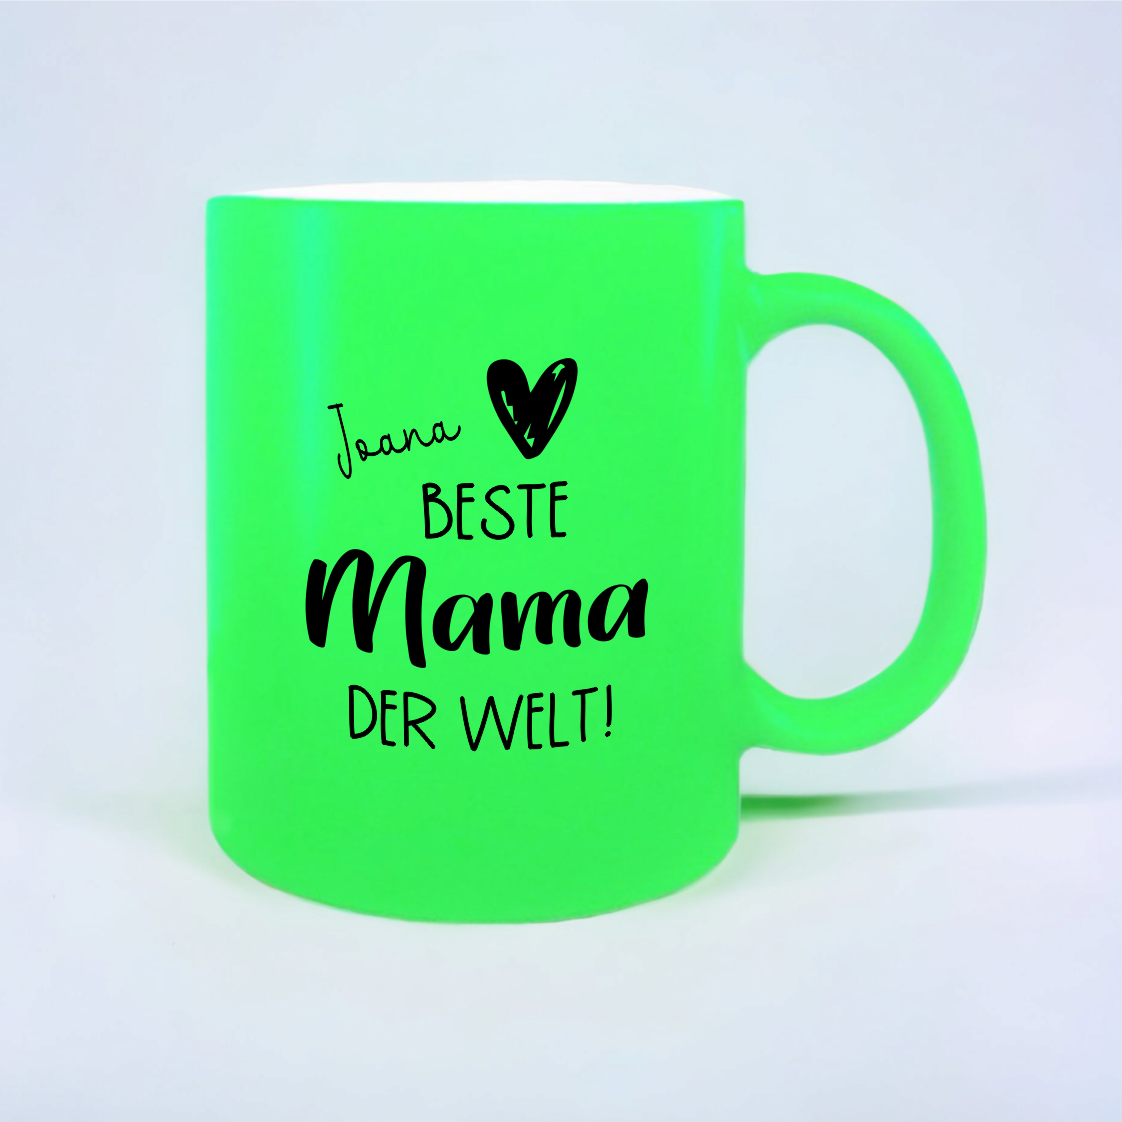 NEON Tasse "Beste Mama der Welt", grün mit Wunschnamen